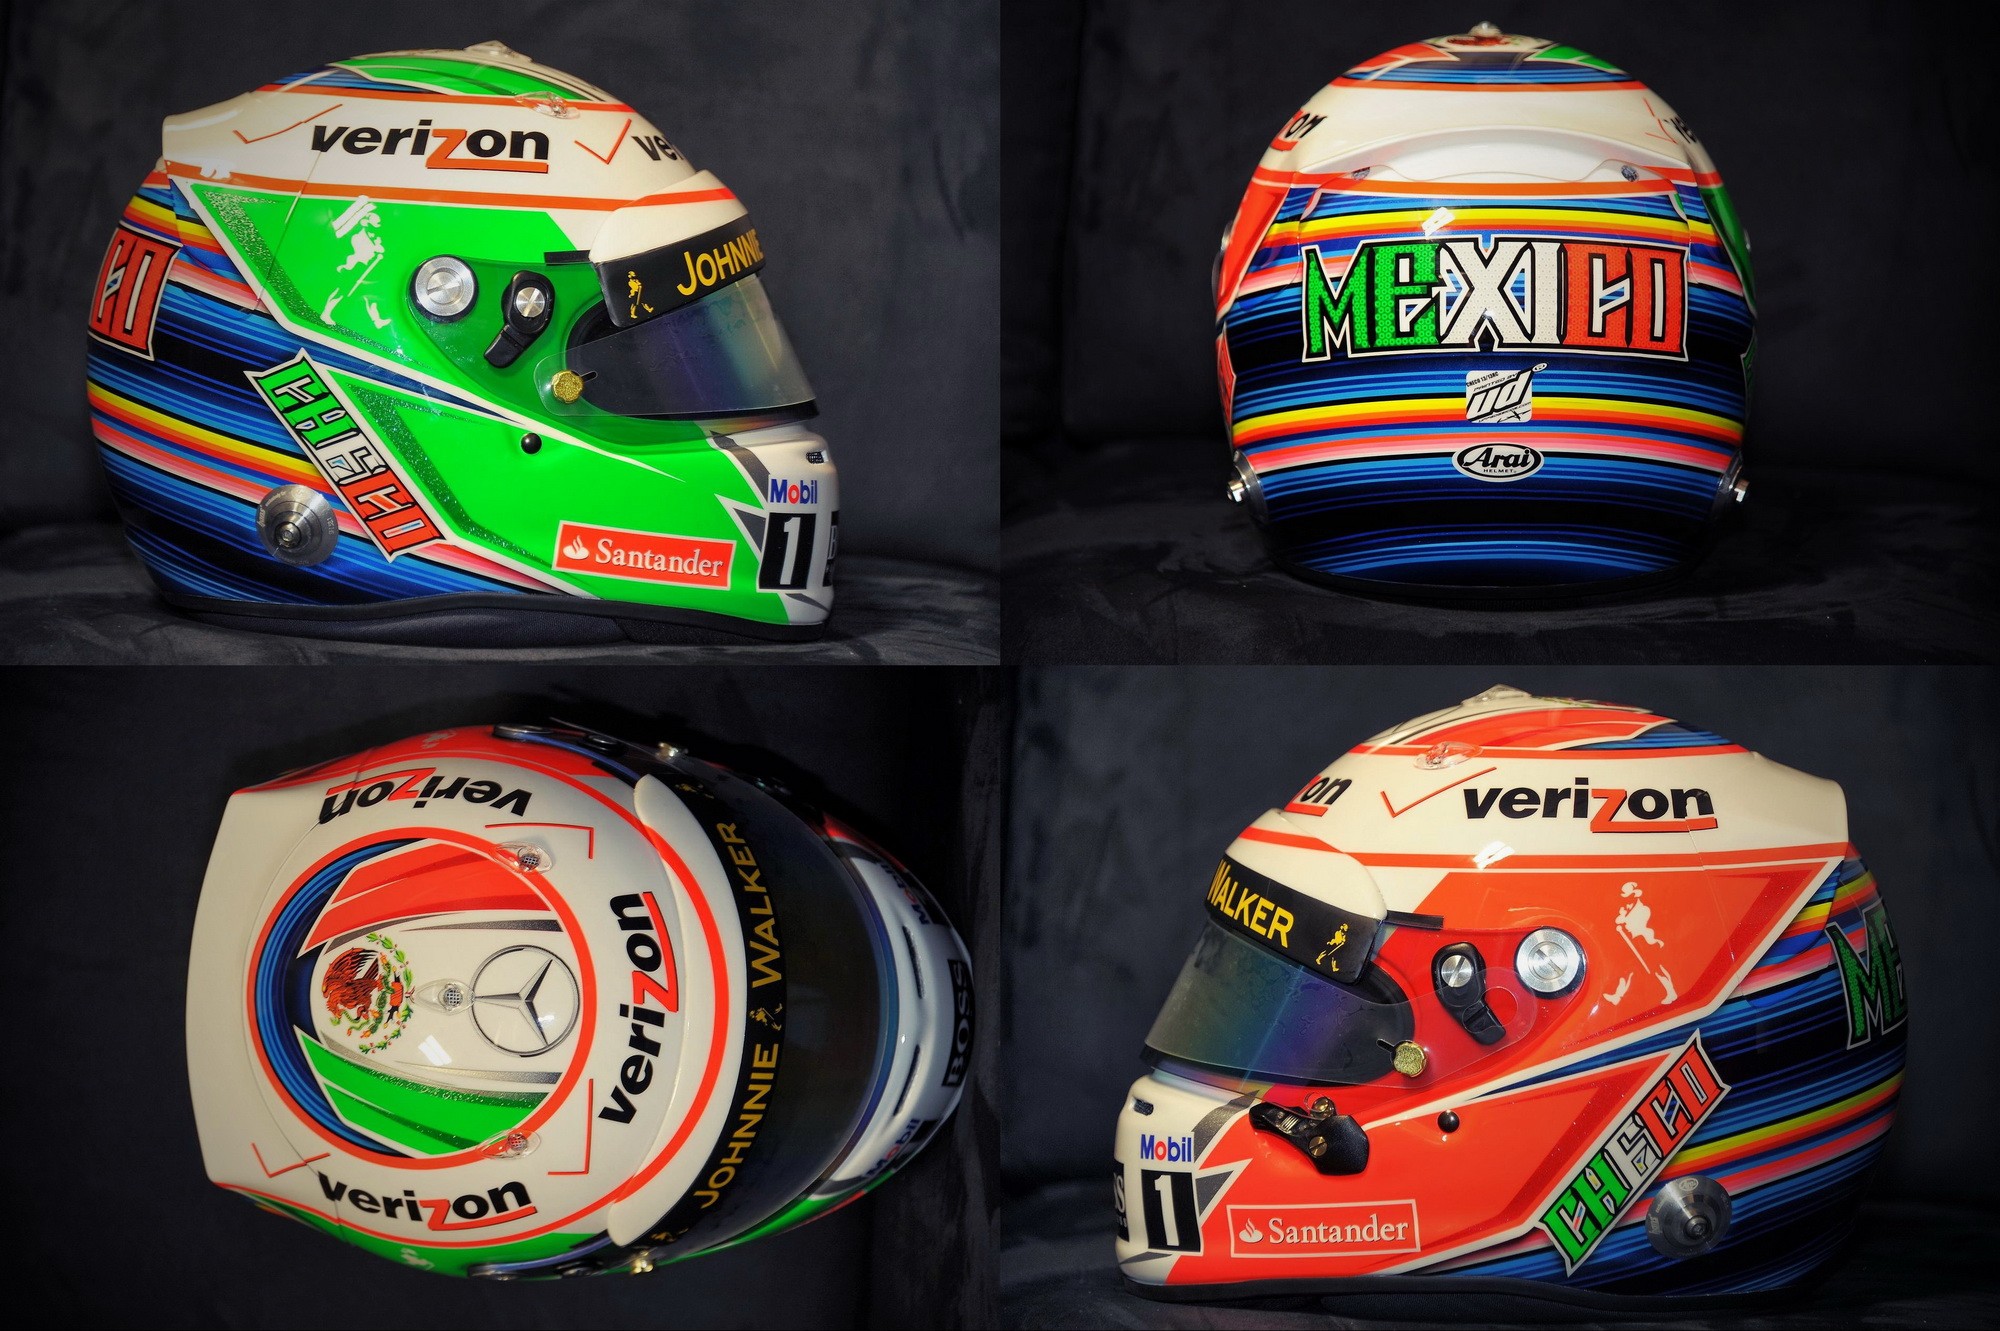 Шлем Серхио Переса на Гран-При США 2013 | 2013 USA Grand Prix helmet of Sergio Perez